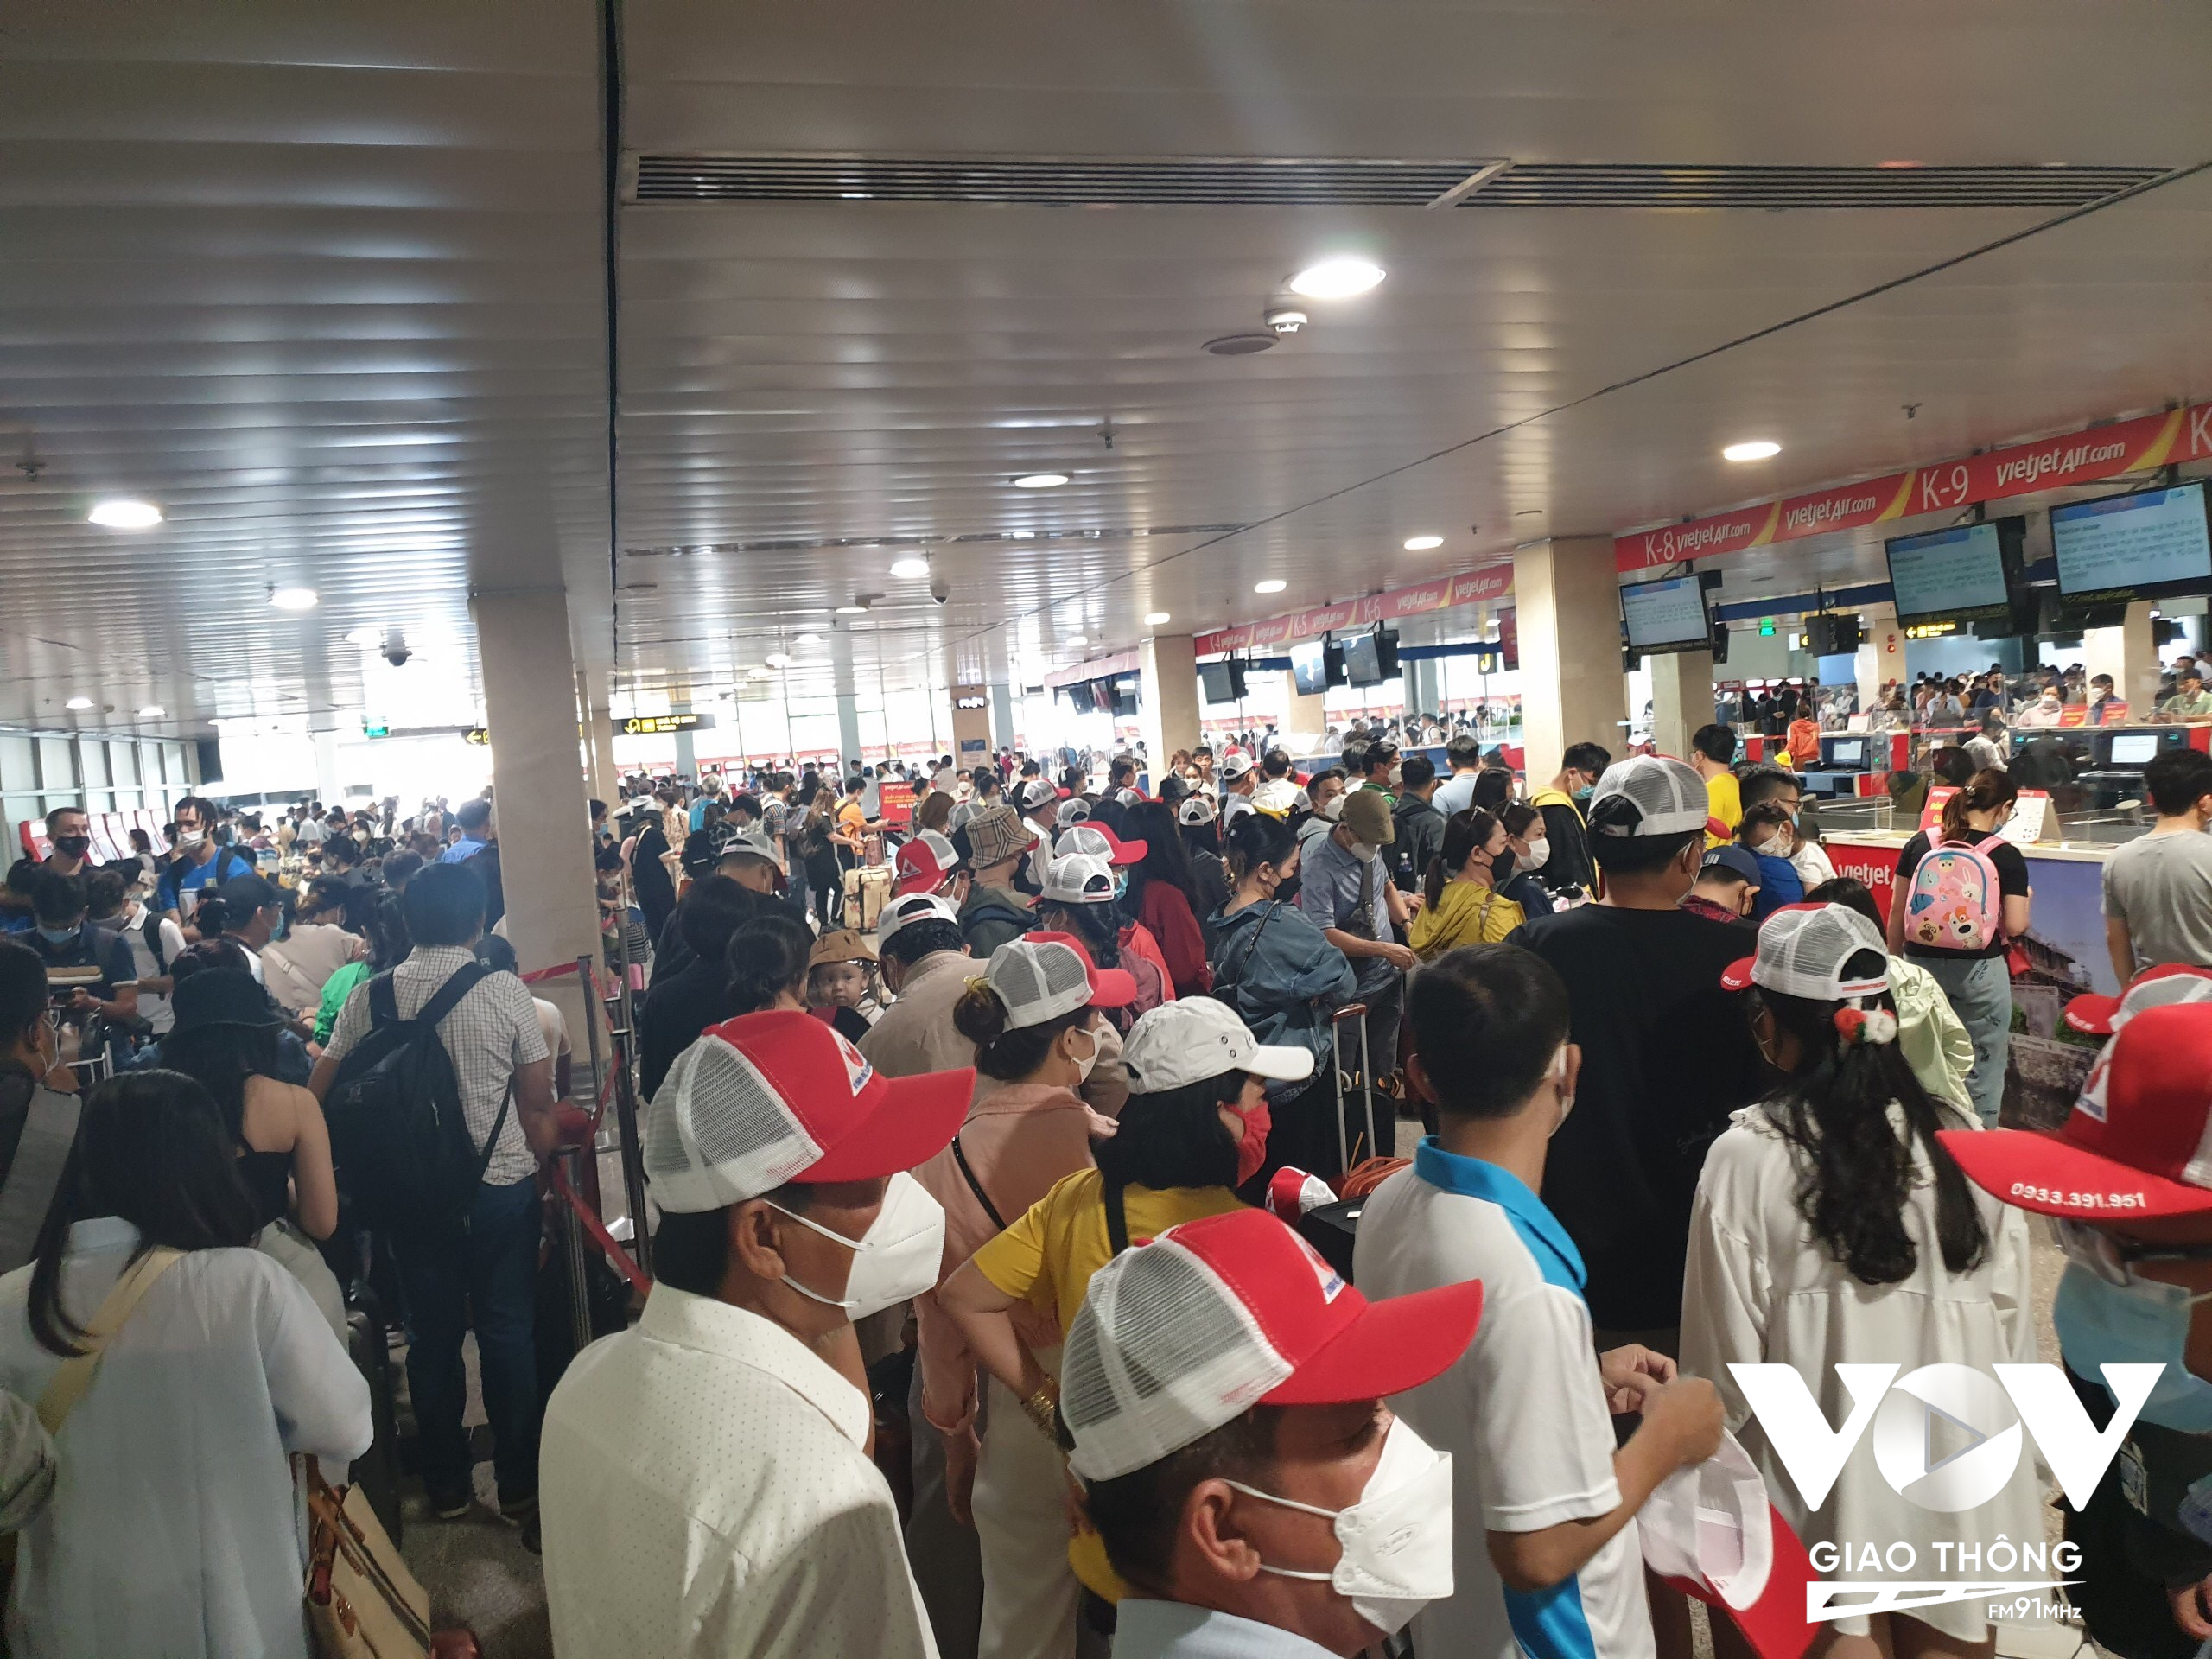 Ghi nhận từ chiều nay (29/4), nhiều hành khách bắt đầu đến sân bay Tân Sơn Nhất để về quê, đi du lịch nhân dịp nghỉ Lễ 30/4 - 1/5.